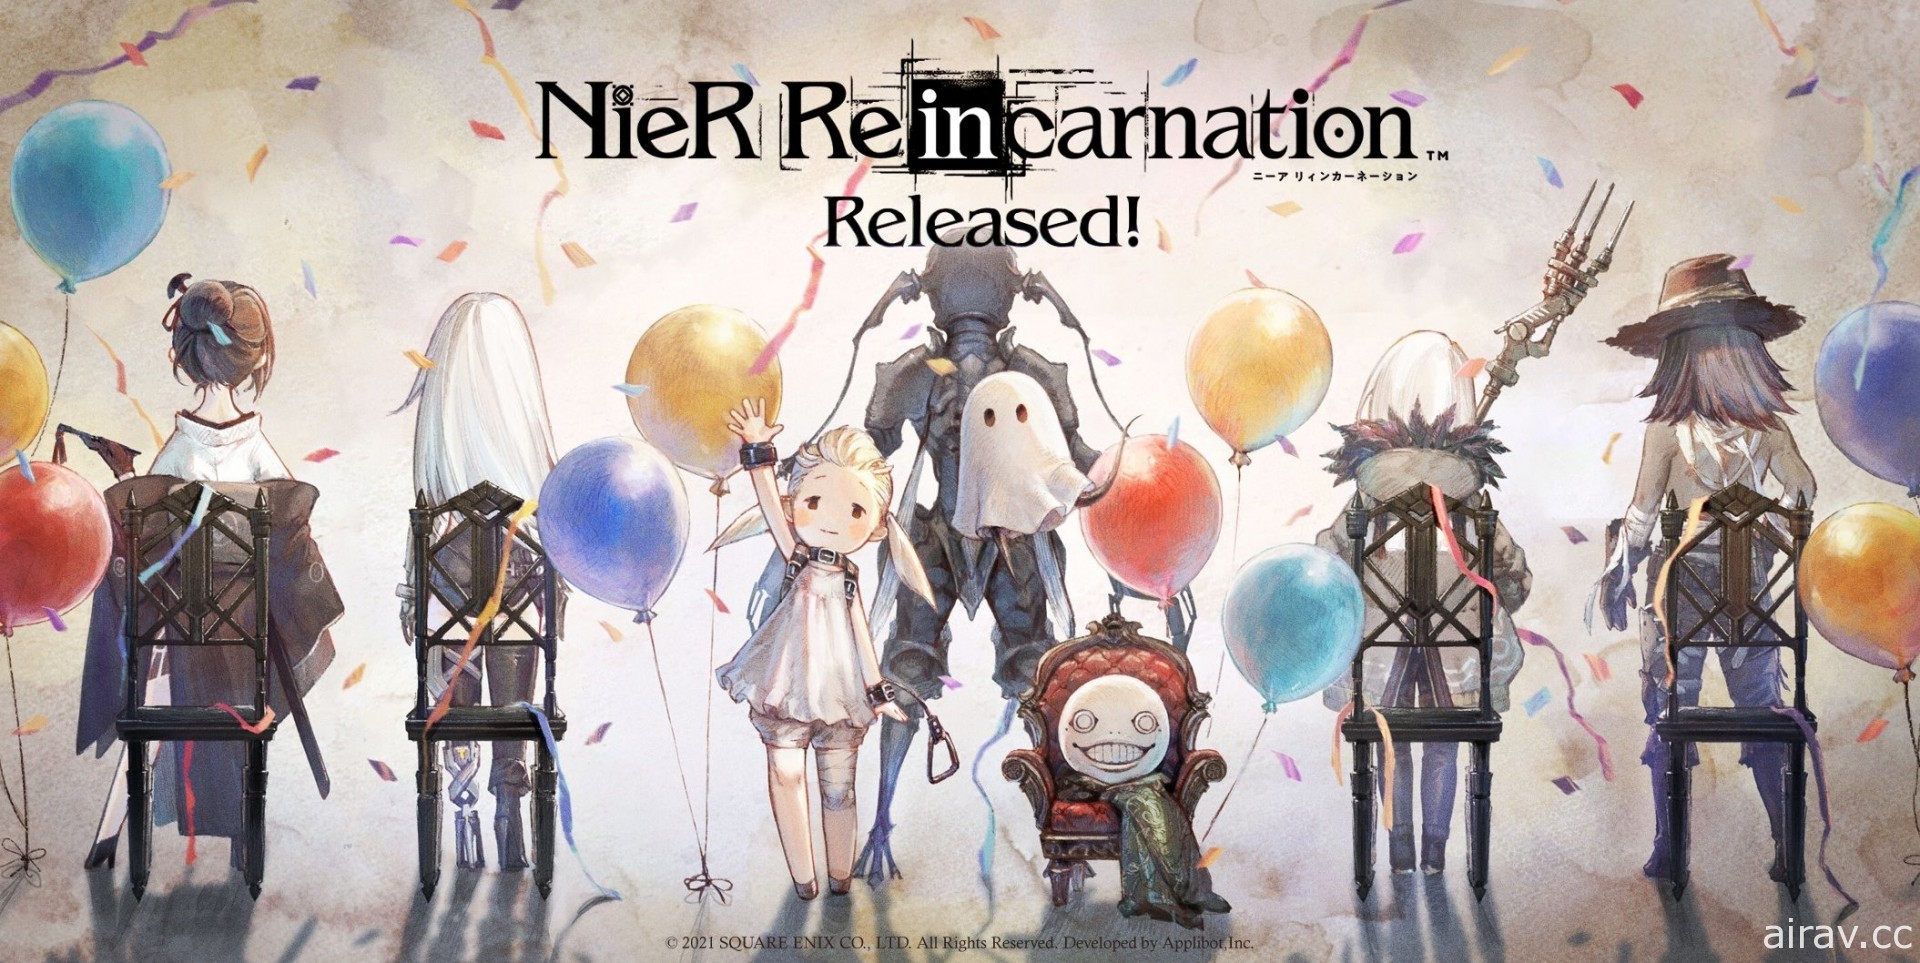 《尼尔》系列手机新作《NieR Re[in]carnation》于日本推出 同步展开《自动人形》联动